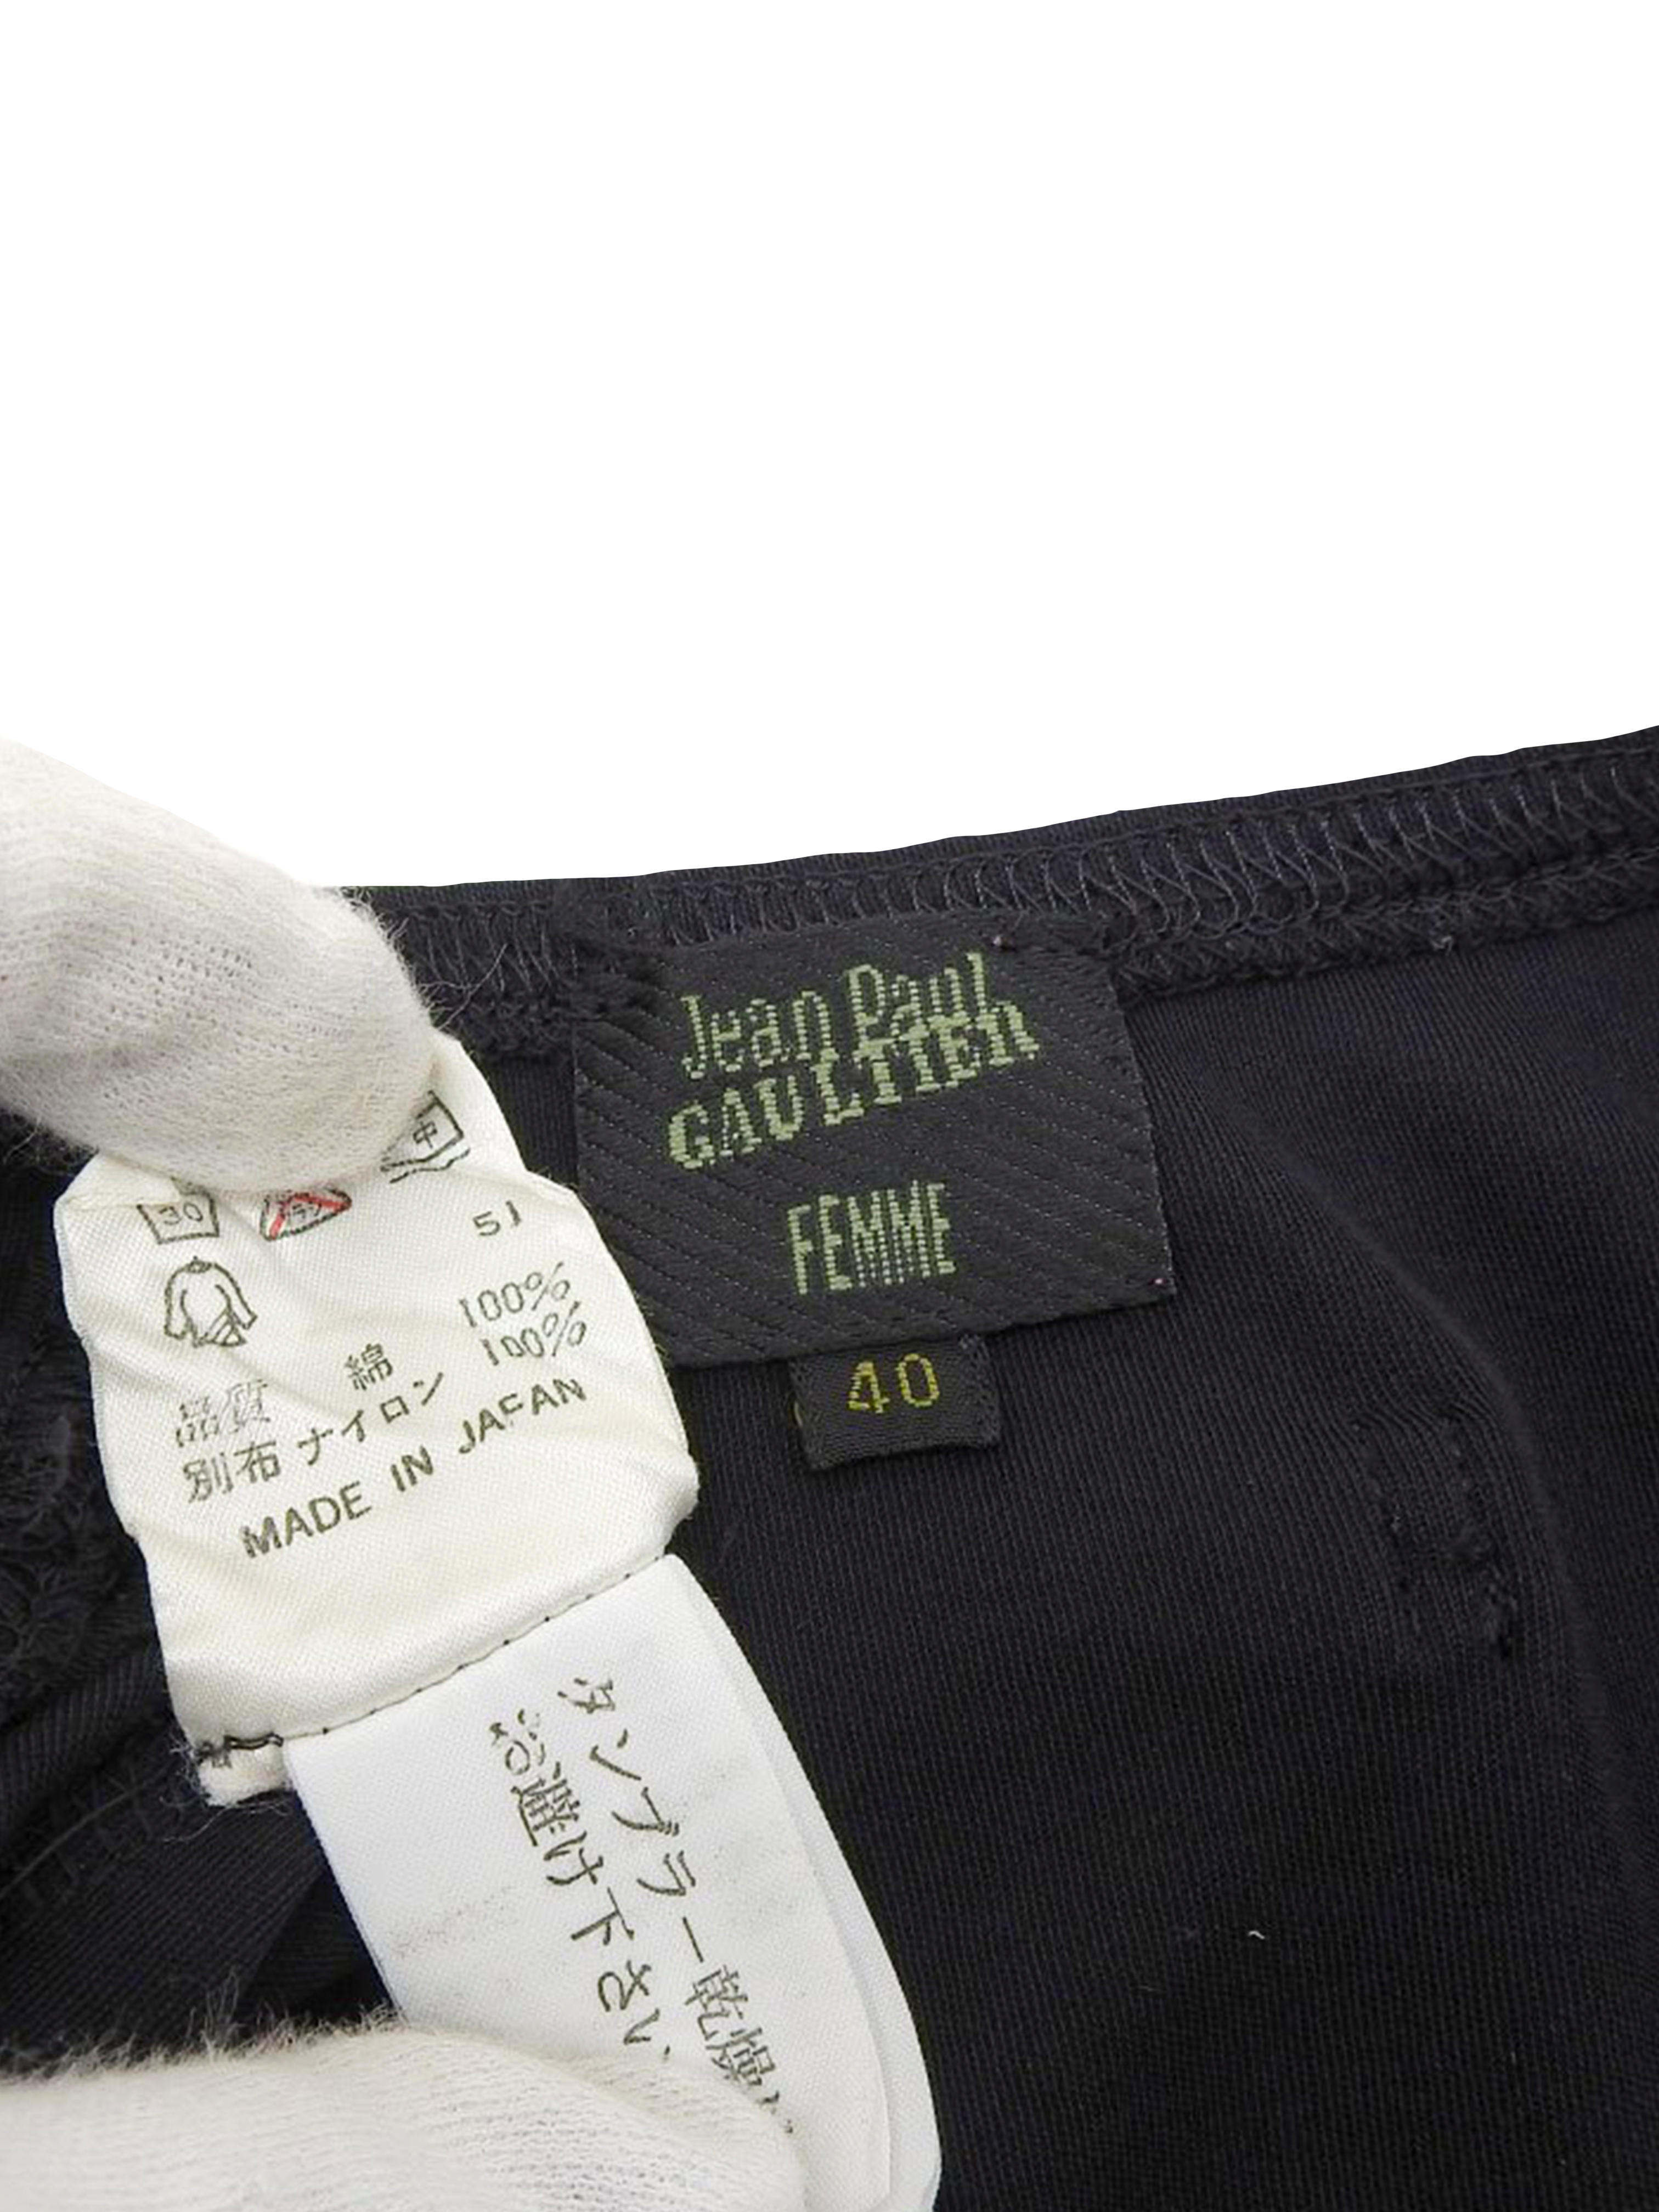 Jean Paul Gaultier 2000s Ruffle Peplum Skirt